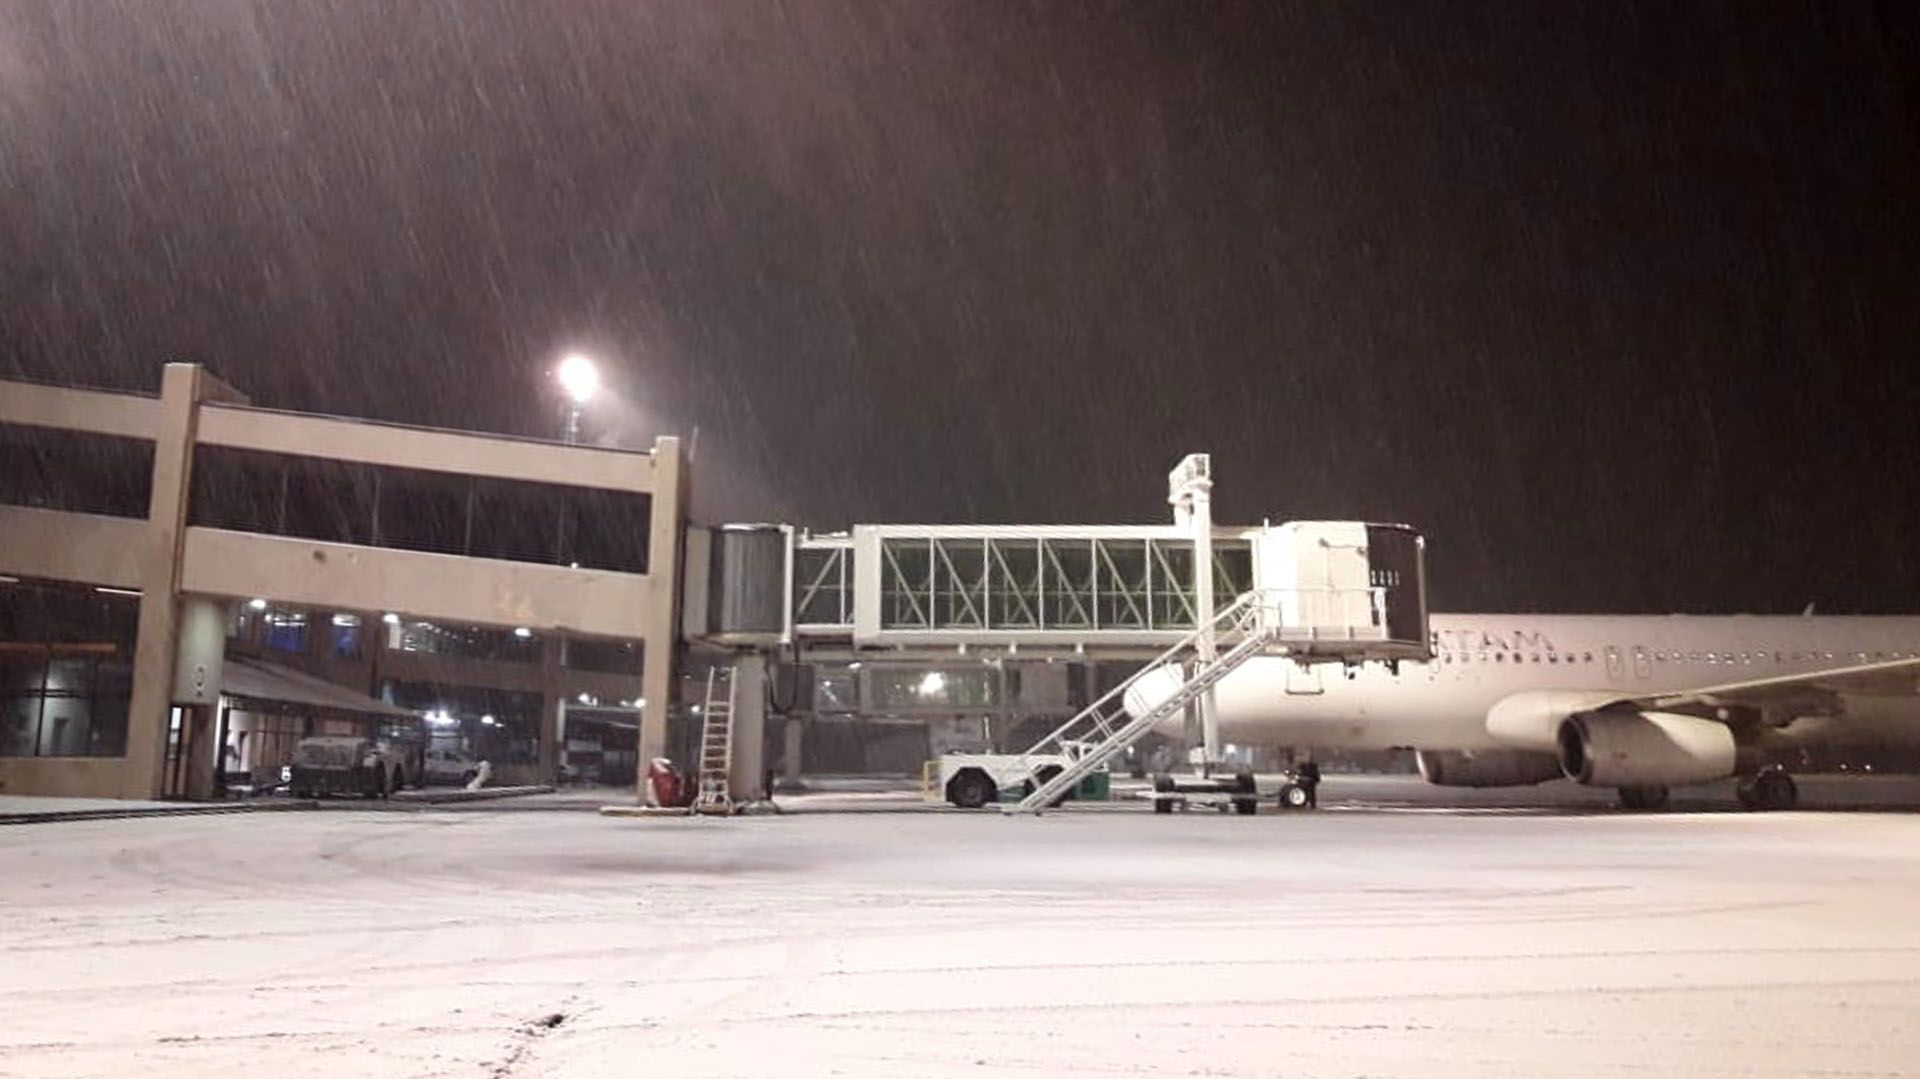 La acumulación de nieve en la pista complica el aterrizaje de los aviones (@munoznotired)